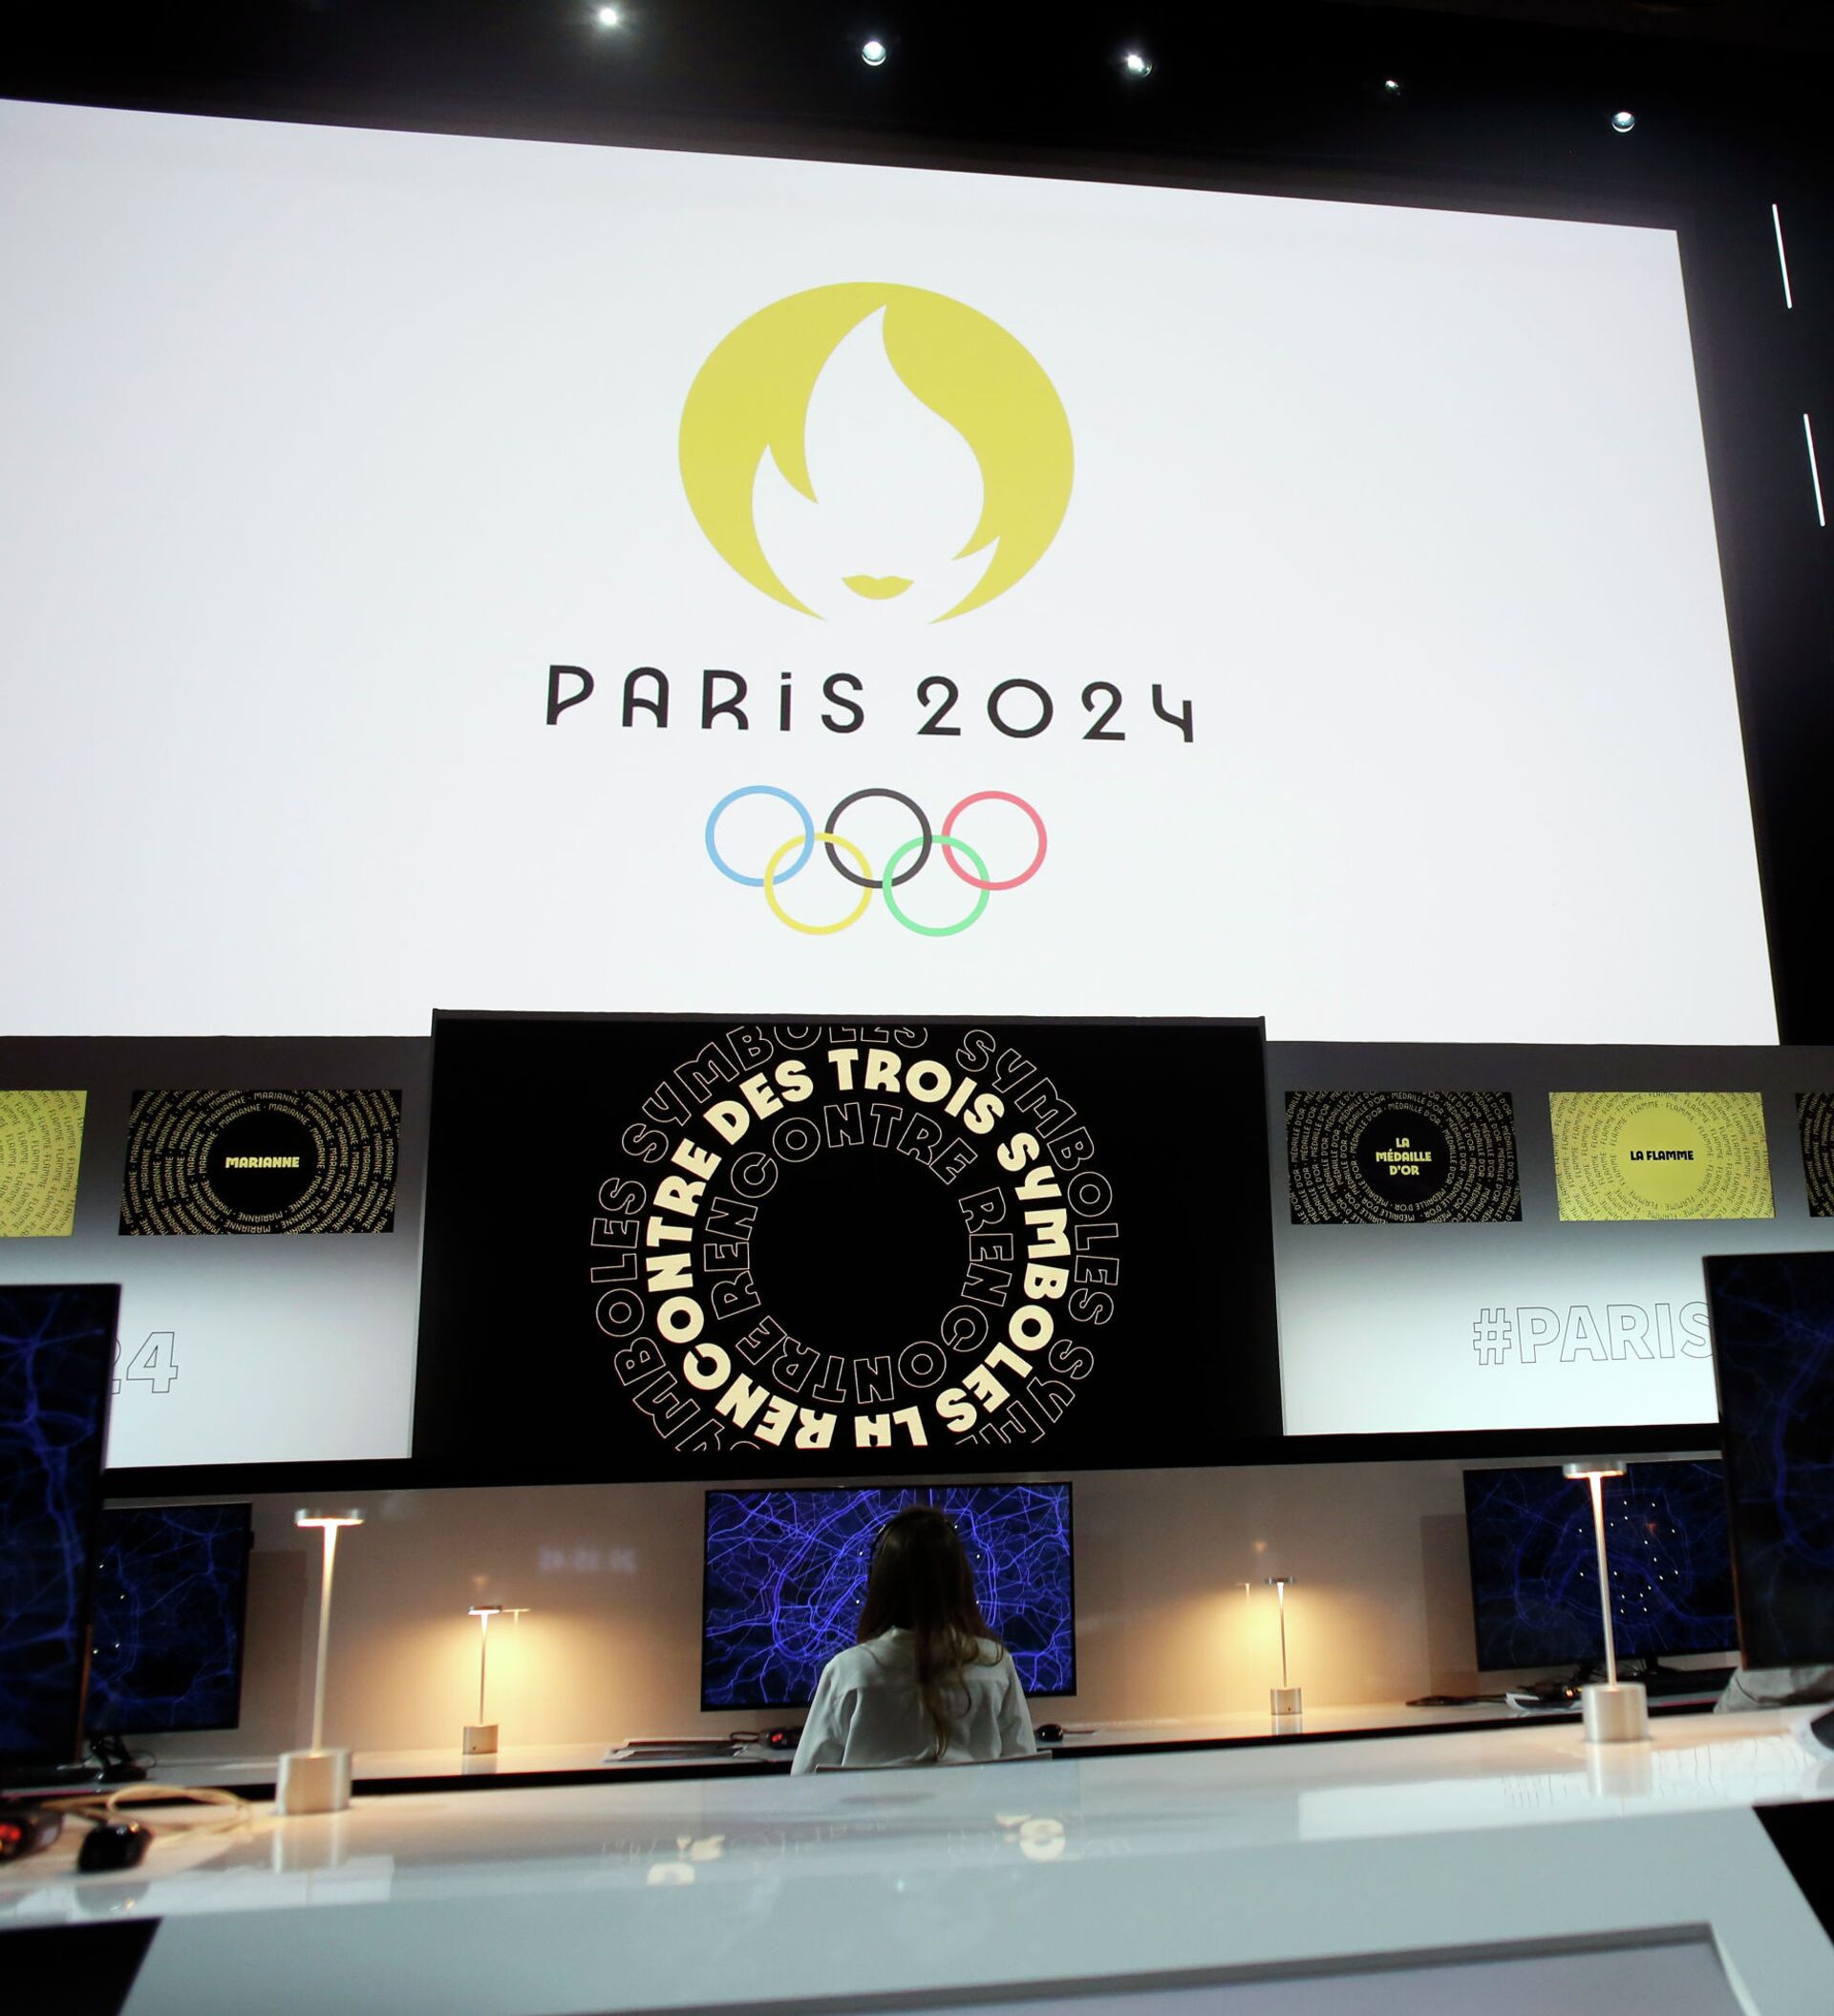 巴黎2024奥运会-品牌设计[19P]